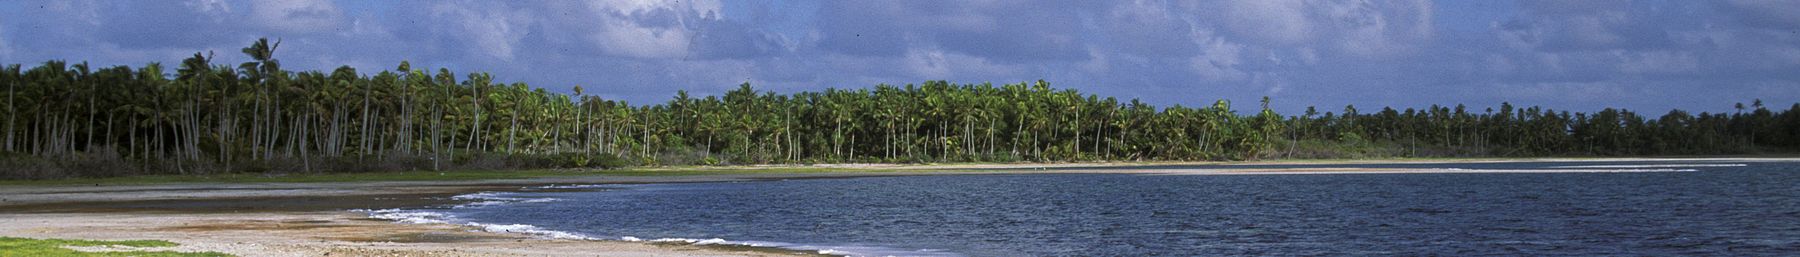 Kiribati banner.jpg